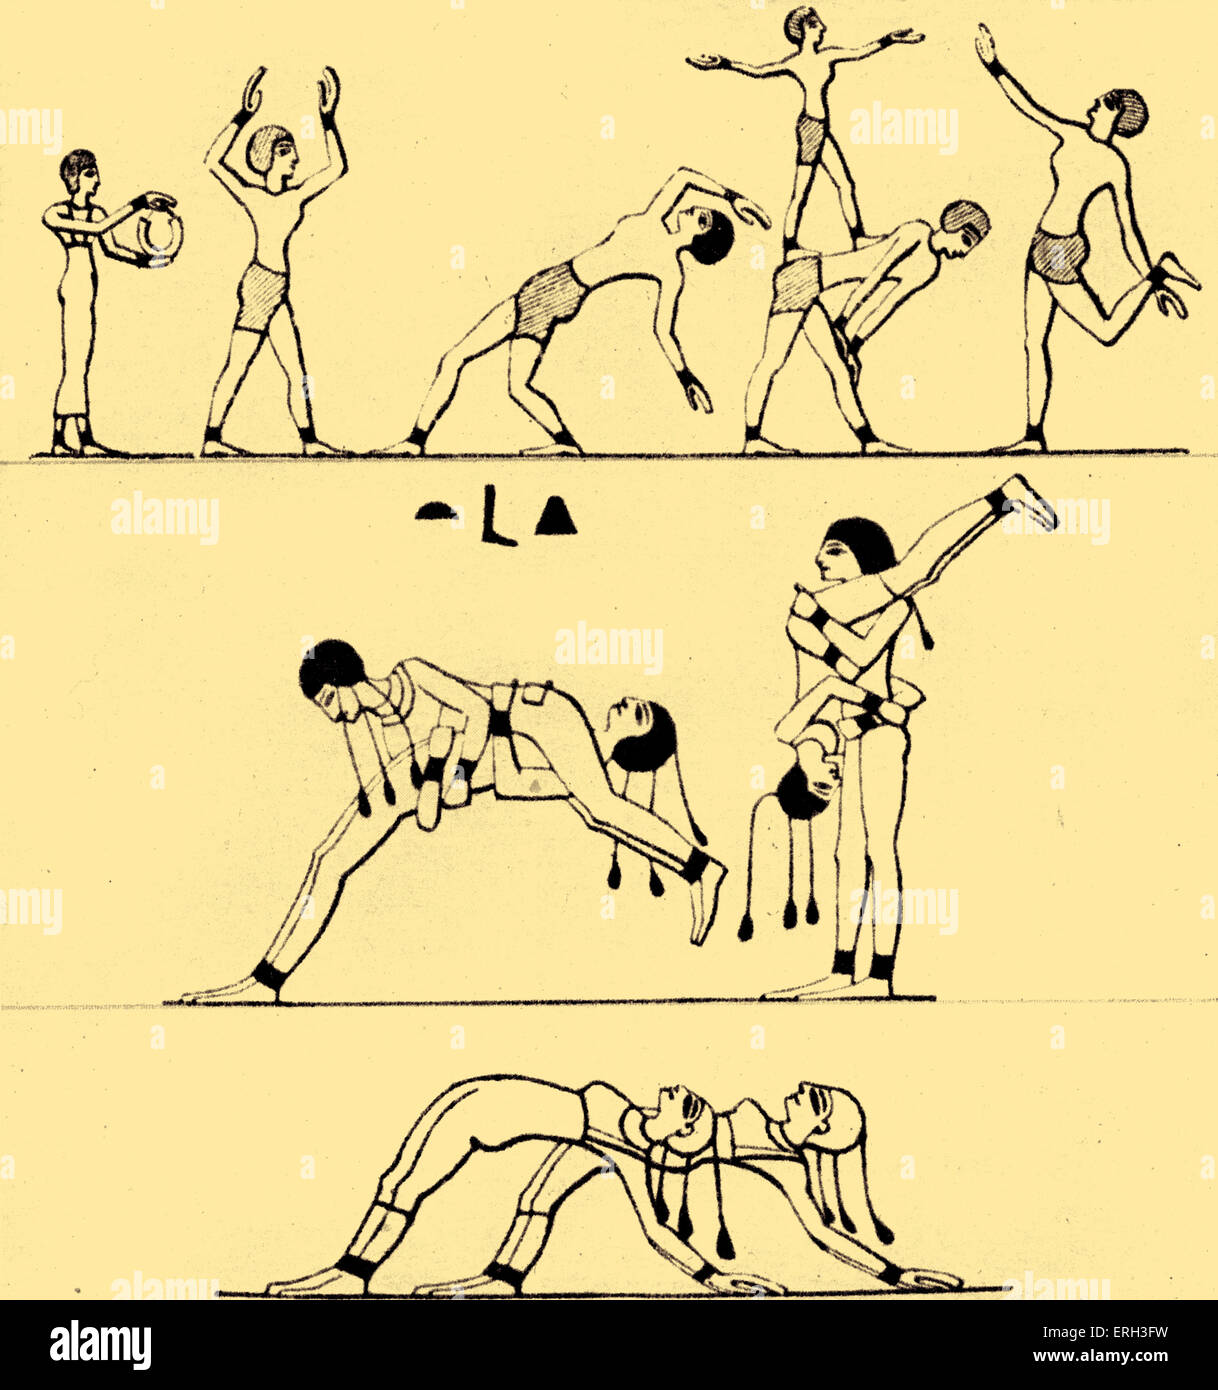 Verres de l'Égypte ancienne / acrobates effectuant des acrobaties. Après une gravure fresque égyptienne. Banque D'Images